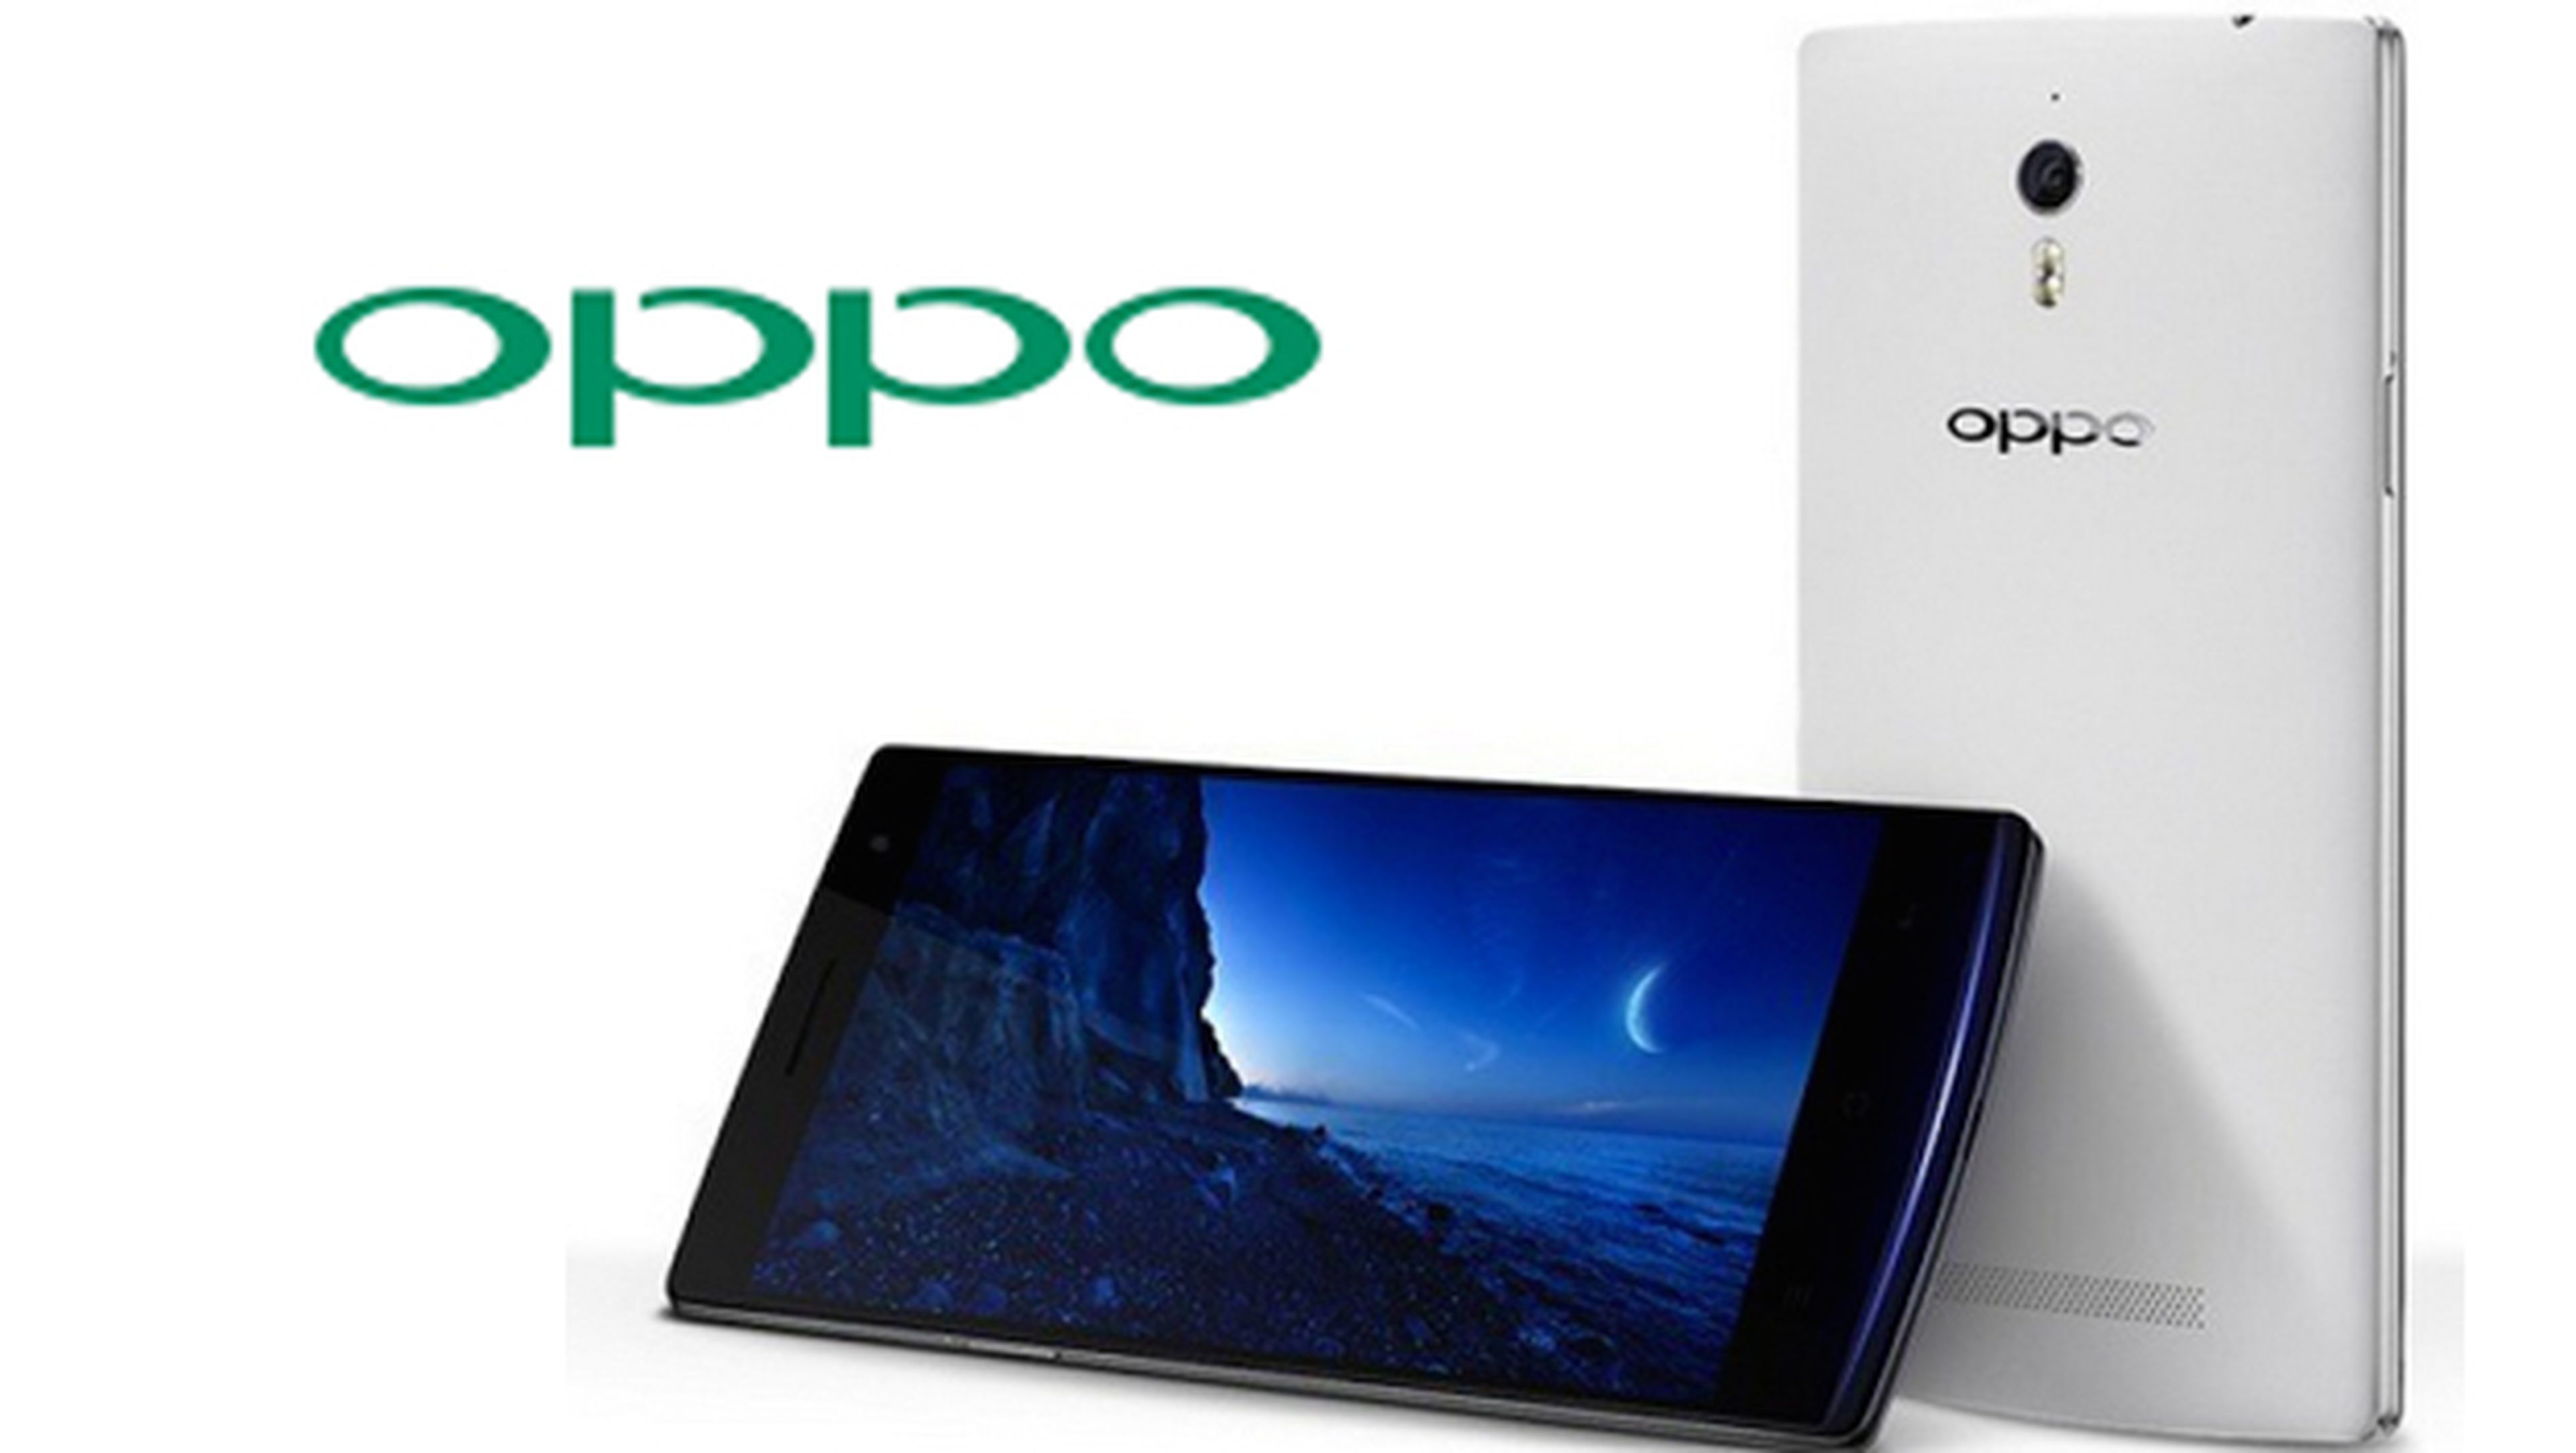 Presentado el Oppo Find 7 con pantalla 2K y Snapdragon 801